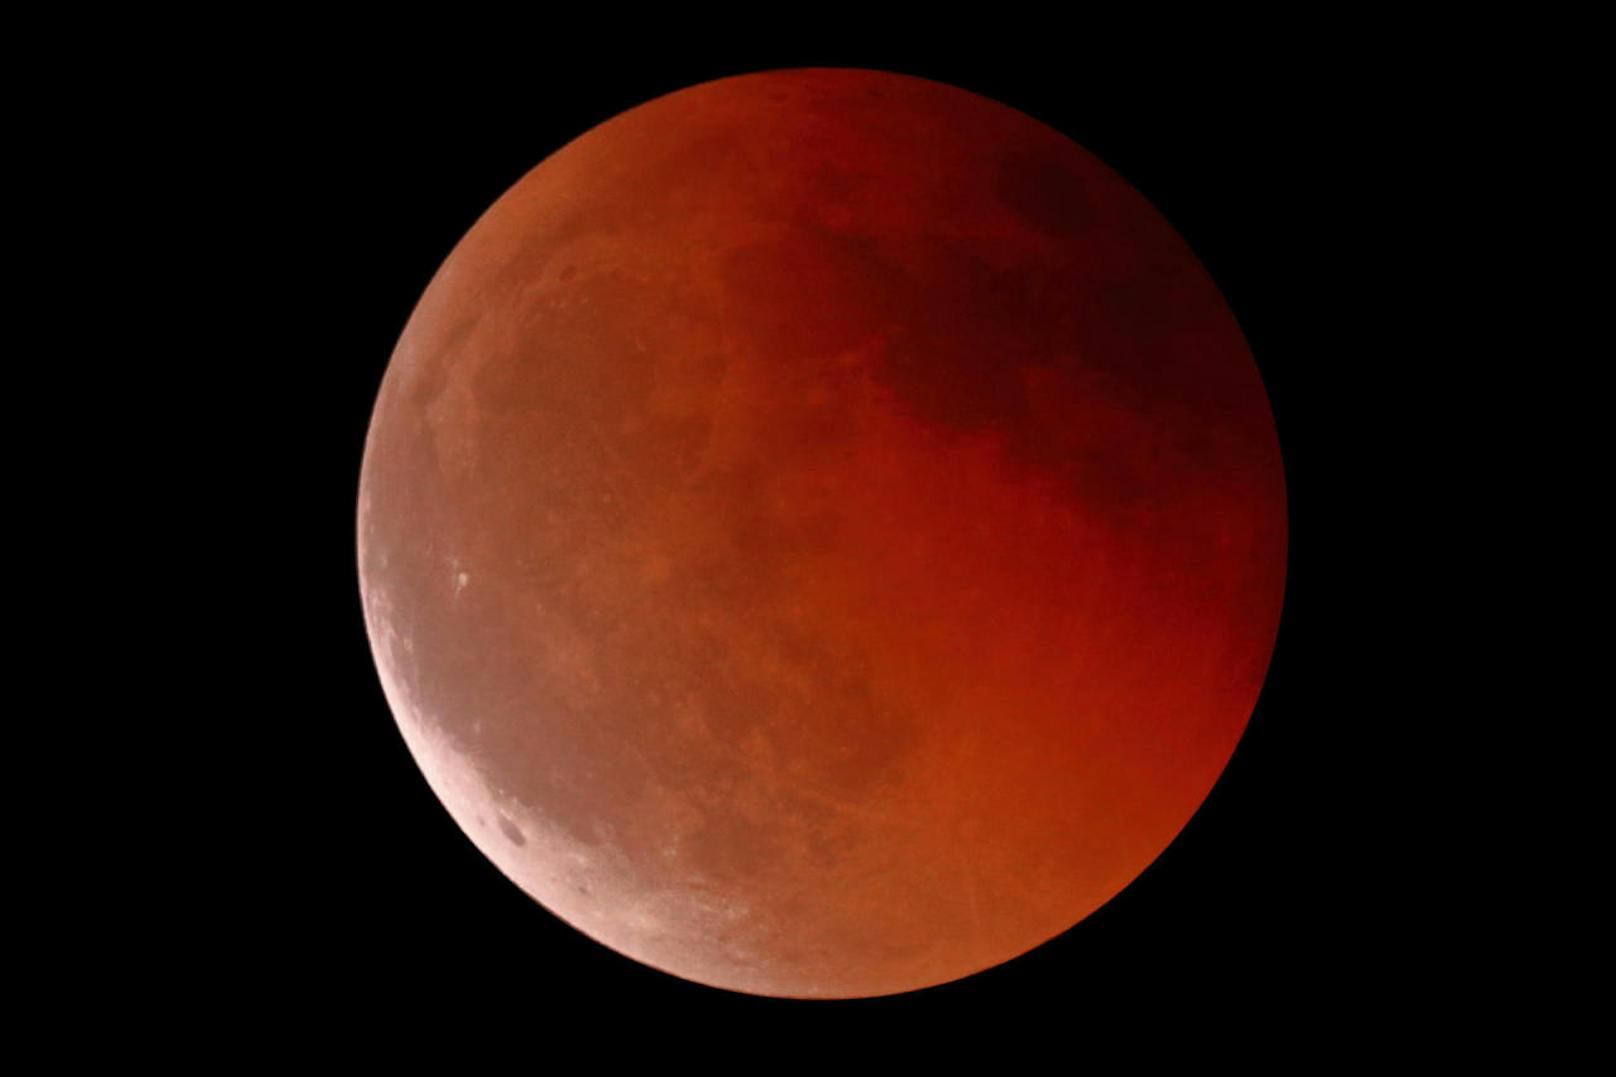 "Bild von der Mondfinsternis um 23:36 vom Gmundnerberg (OÖ) aus. Aufgenommen wurde das Bild mit einem großen Spiegelteleskop und einer Spiegelreflexkamera."